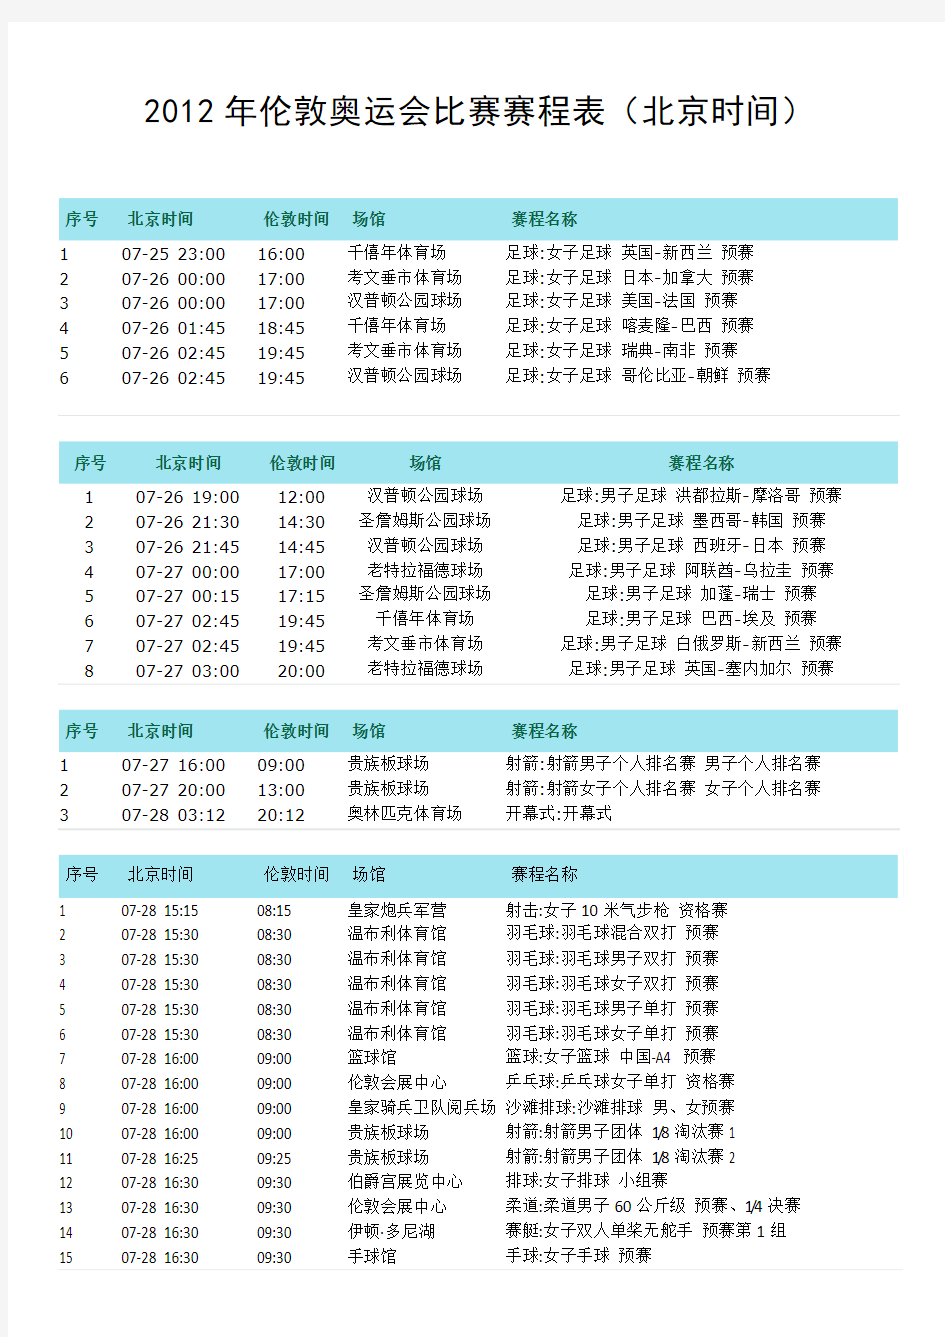 2012年伦敦奥运比赛时间表(北京时间)